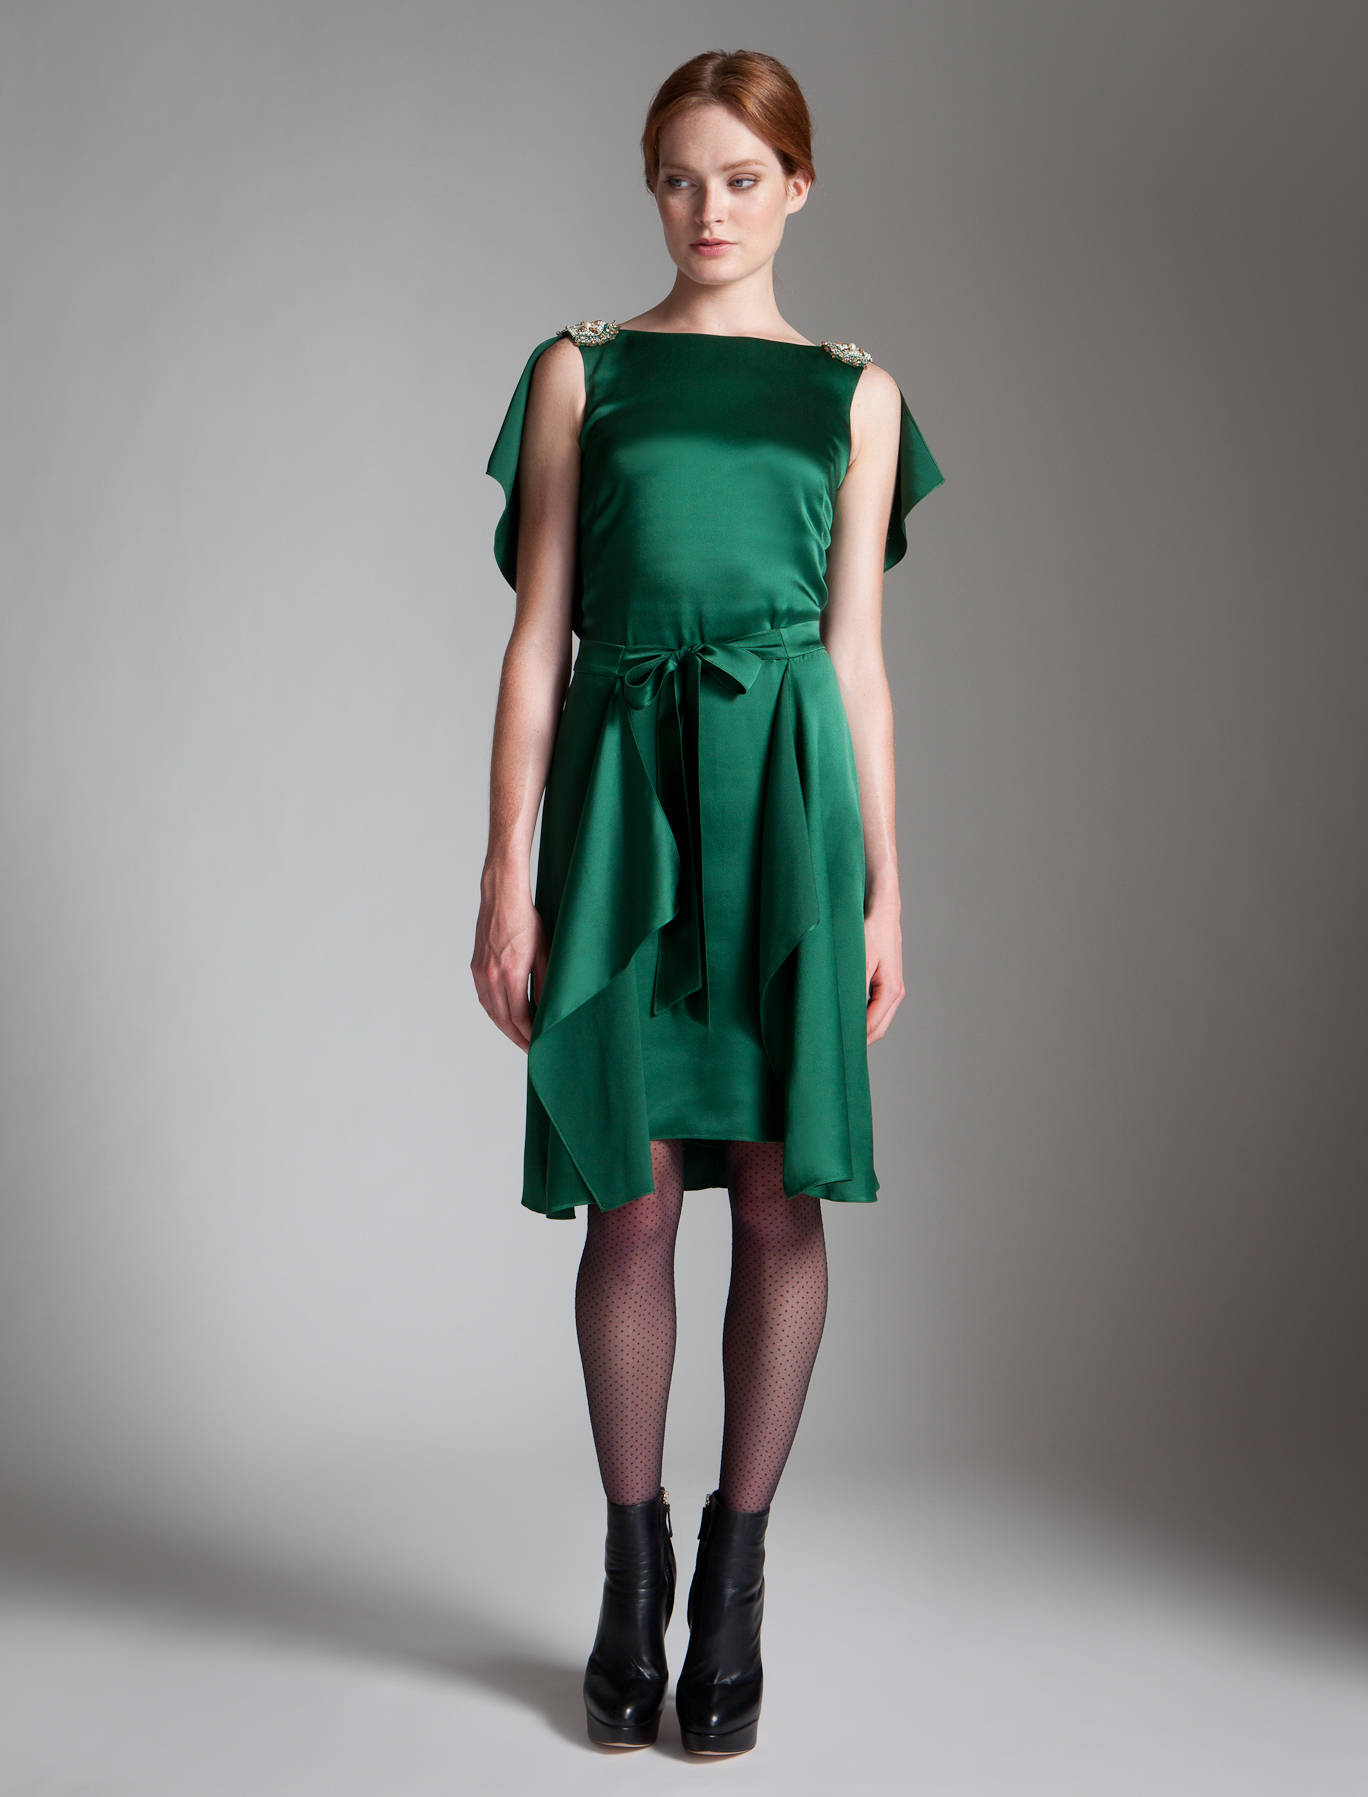 Lyst - Temperley London Carmel Dress in Green